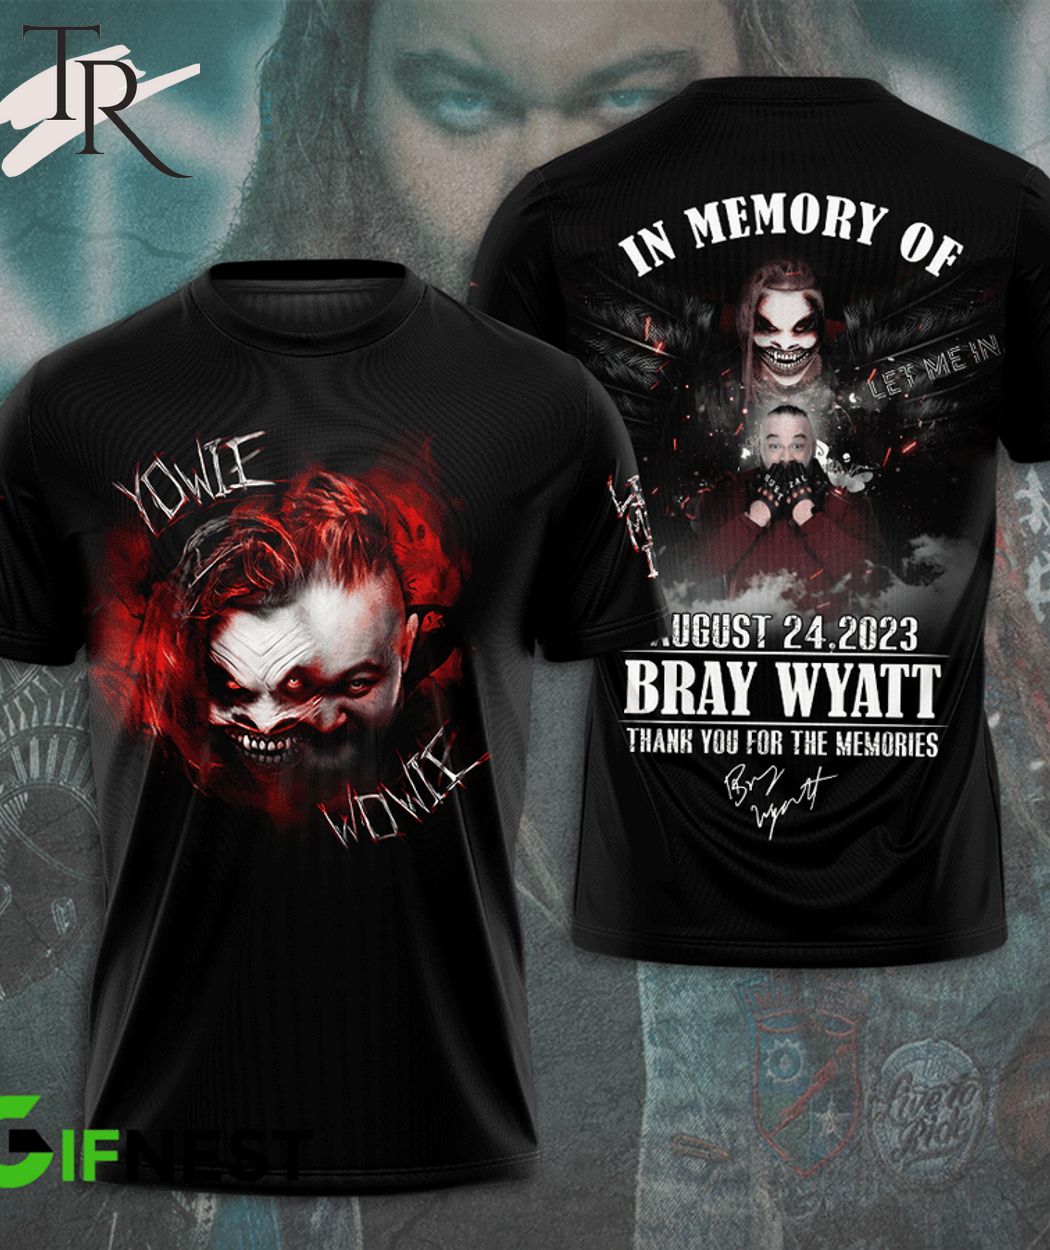 Bray Wyatt Yowie Wowie signatures Shirt